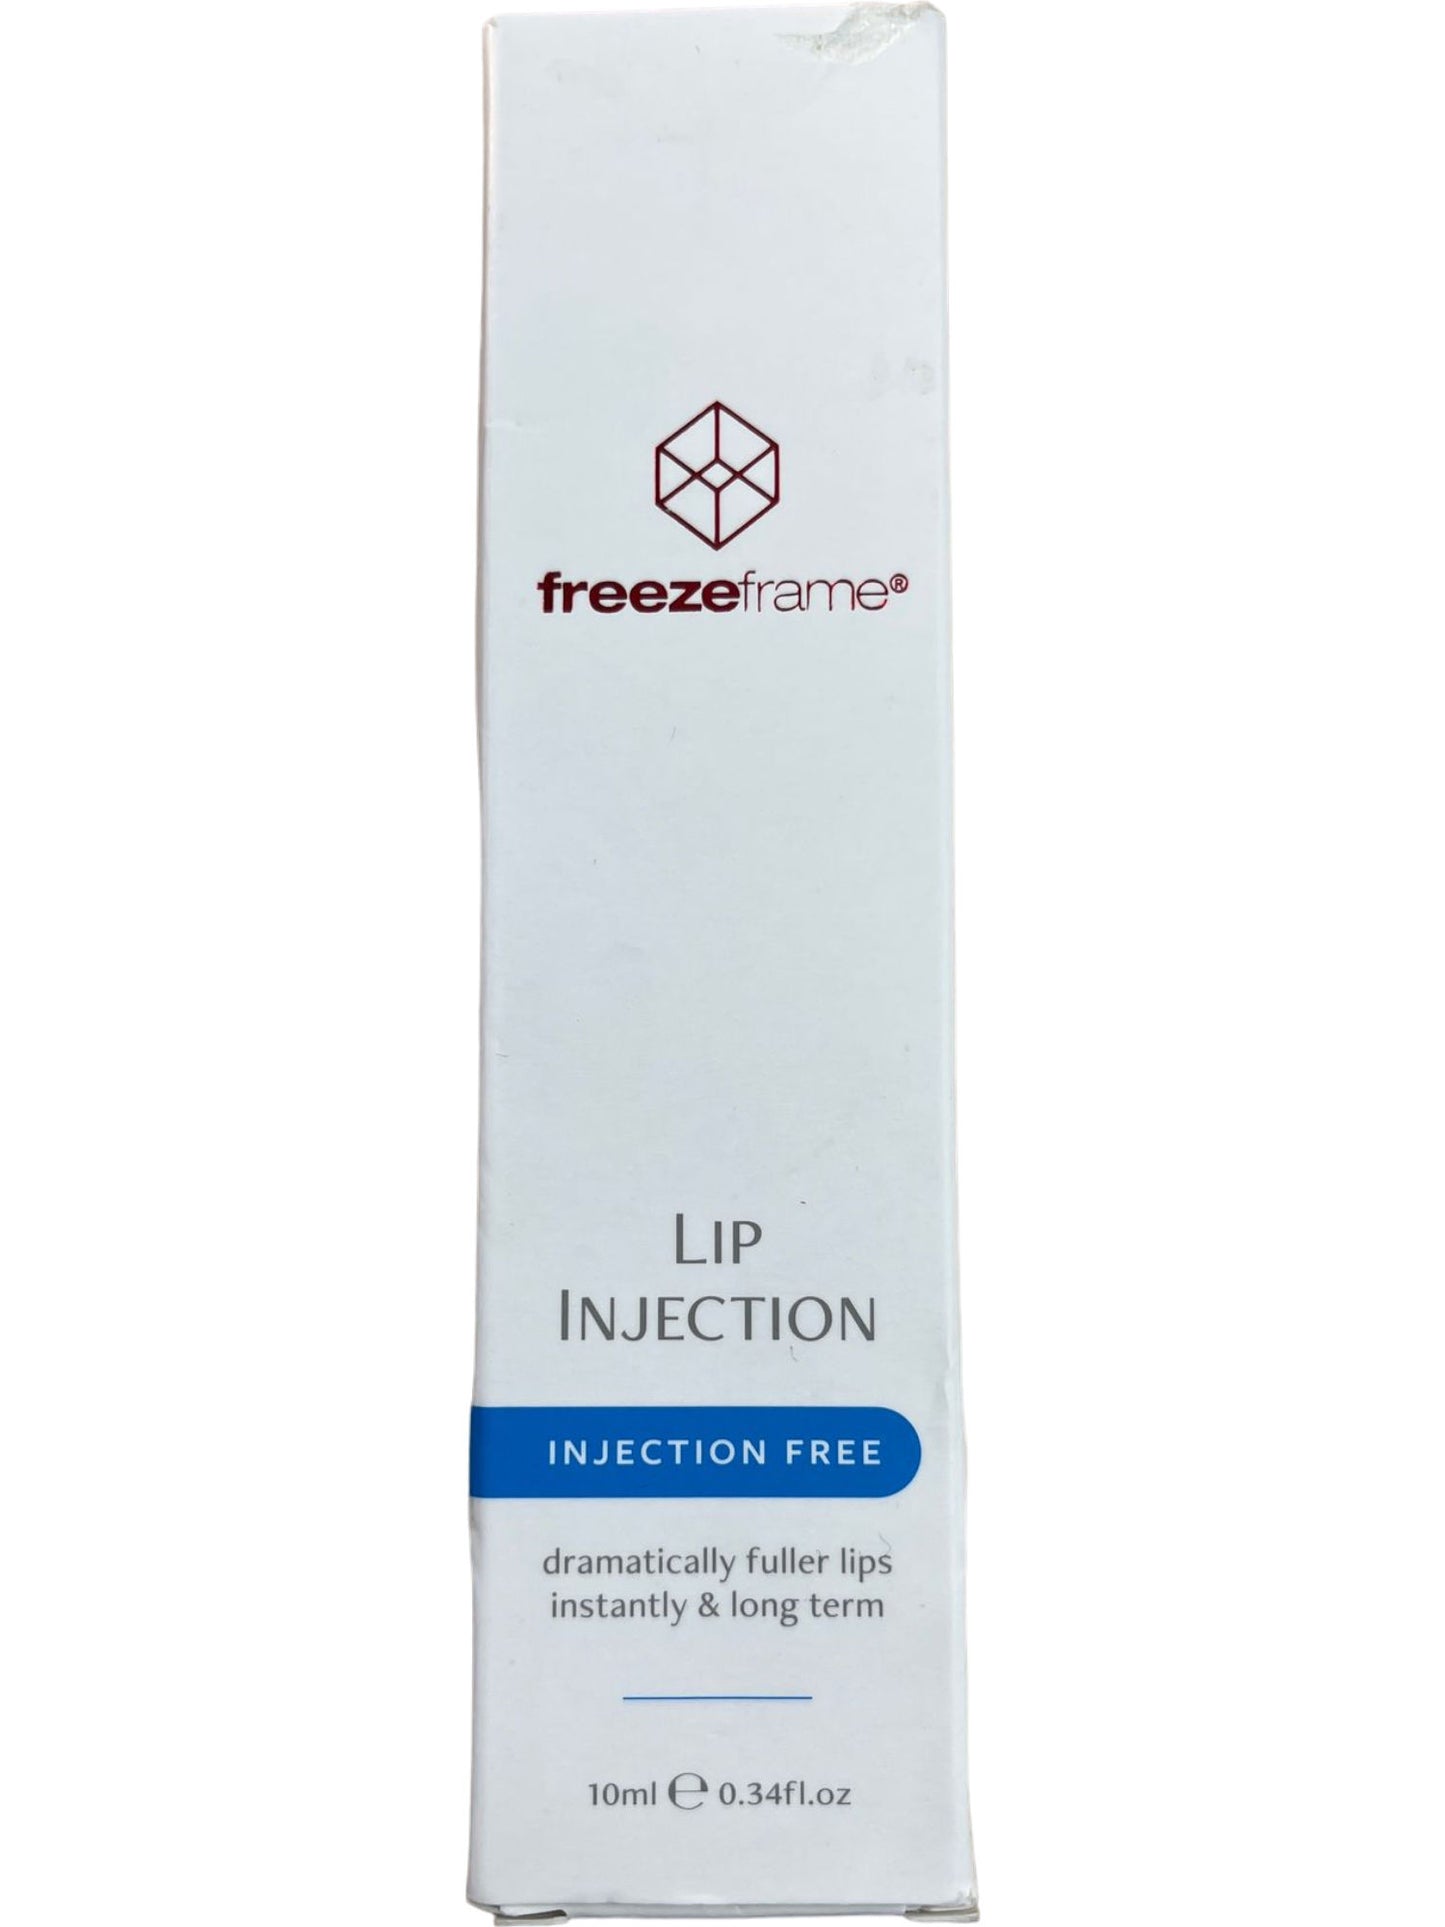 Freezeframe Lip Injection Volumising Lip Treatment